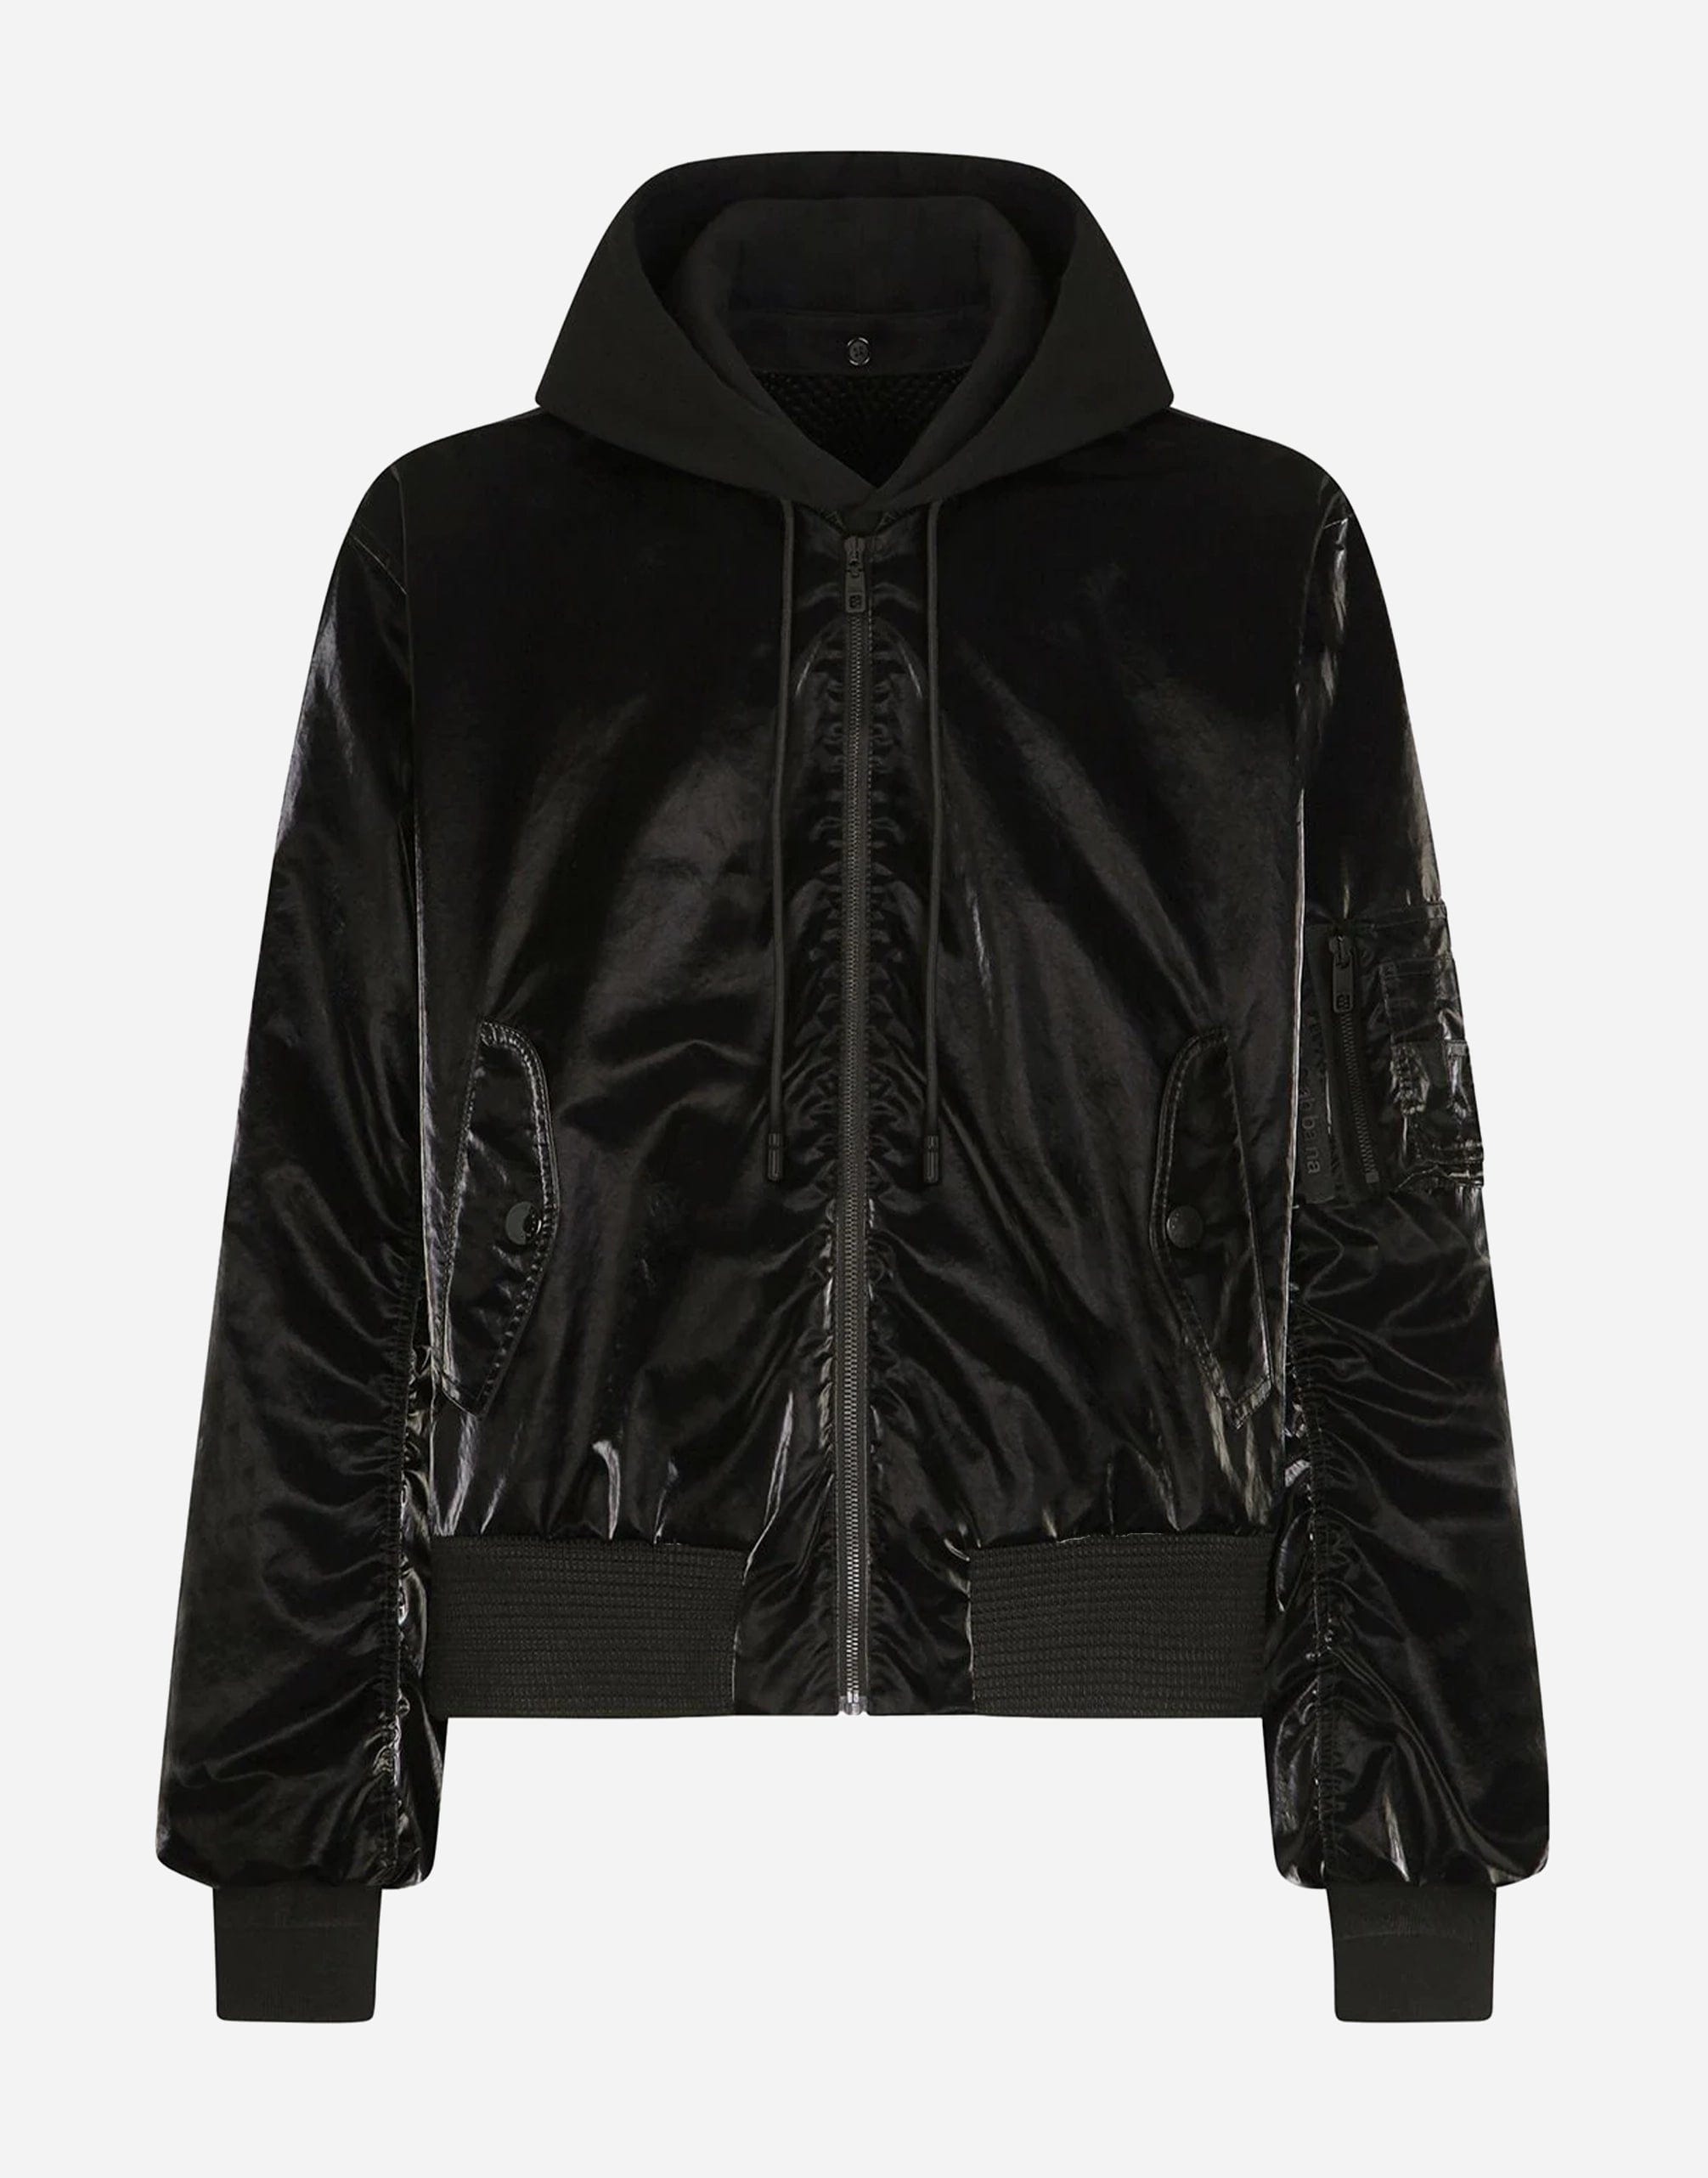 Dolce & Gabbana Varnished Hooded Bomber Jacket